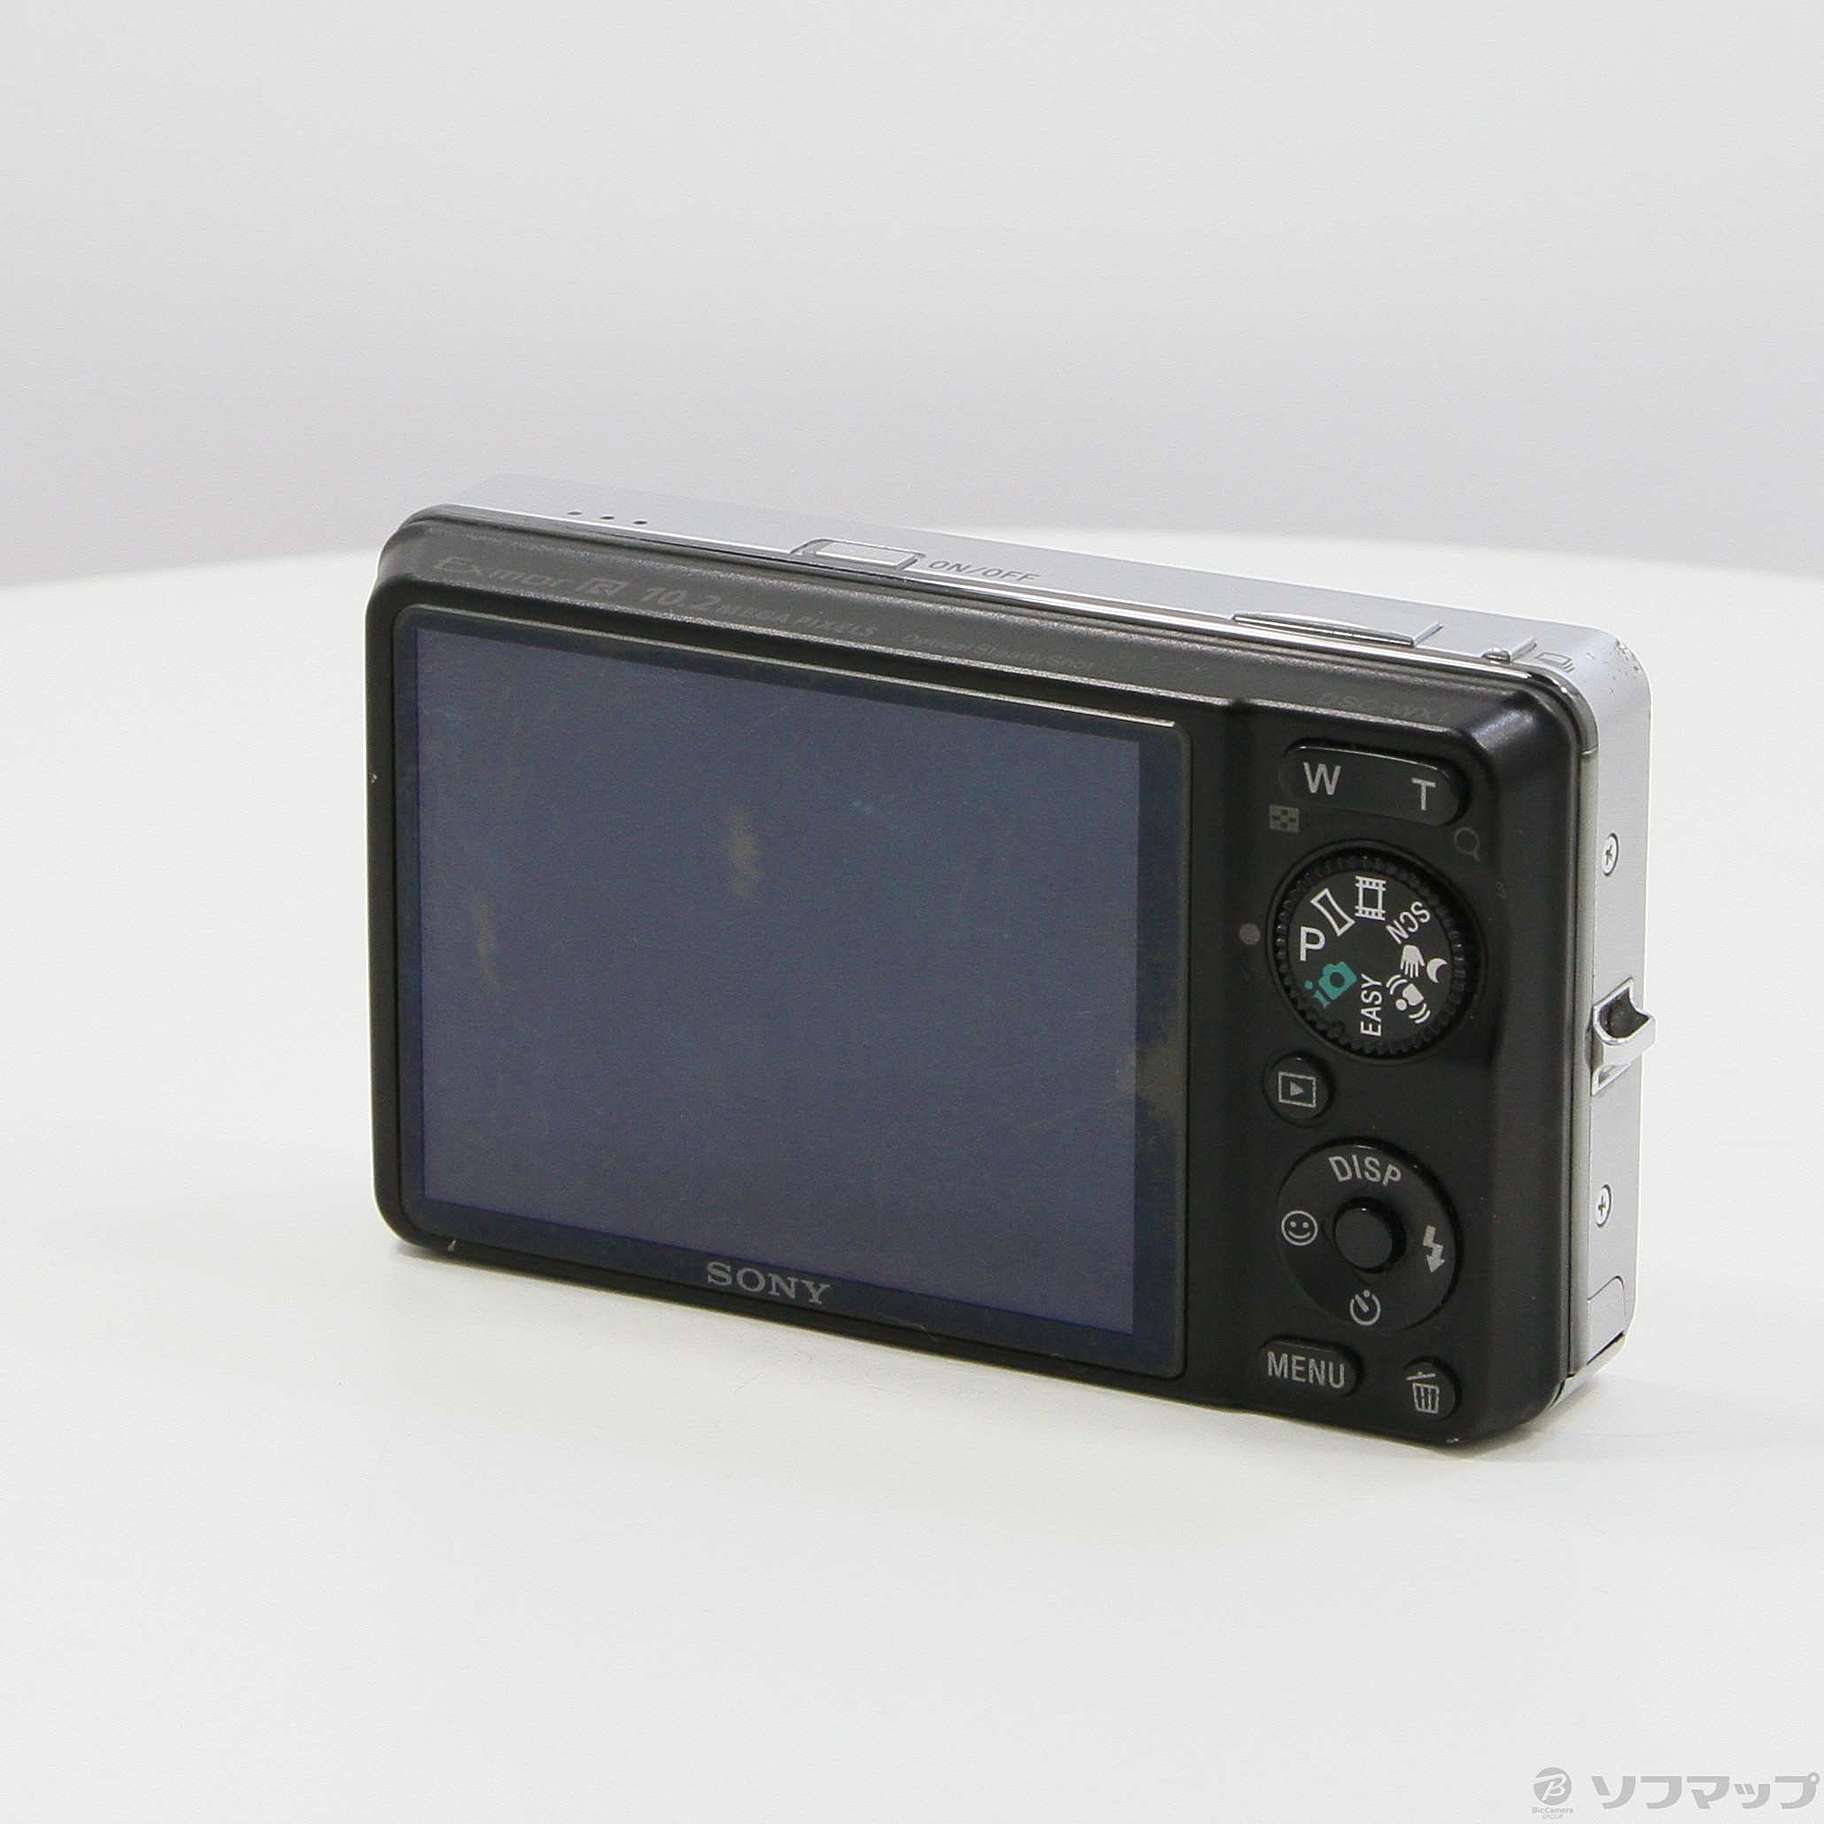 ソニー製の小型デジカメです。Cyber-shot DSC-WX1 - デジタル一眼